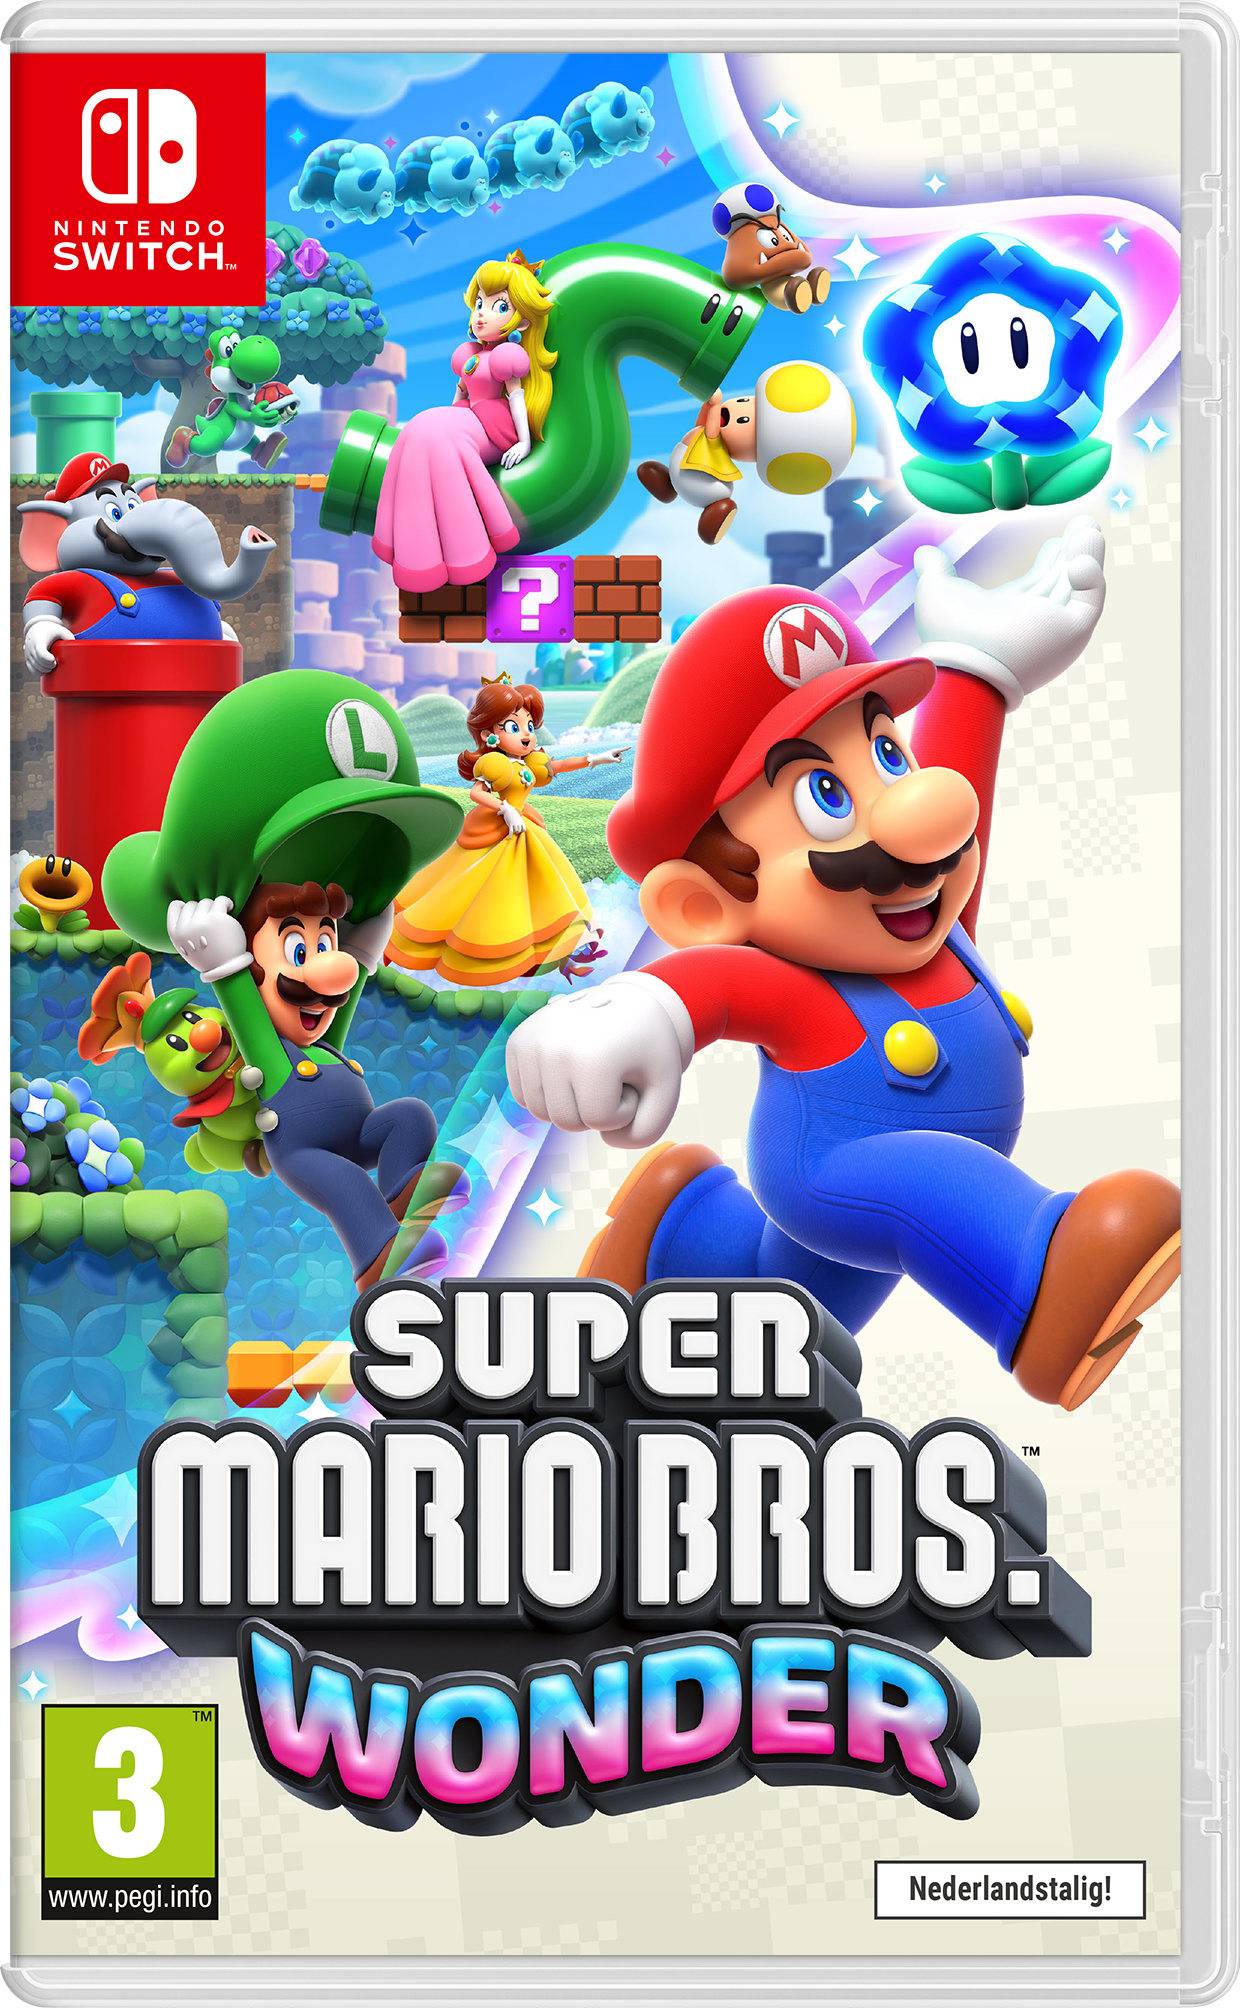 Cadeaux. Jouez au Chrono Quiz pour gagner une Nintendo Switch Lite et le jeu  Mario Party